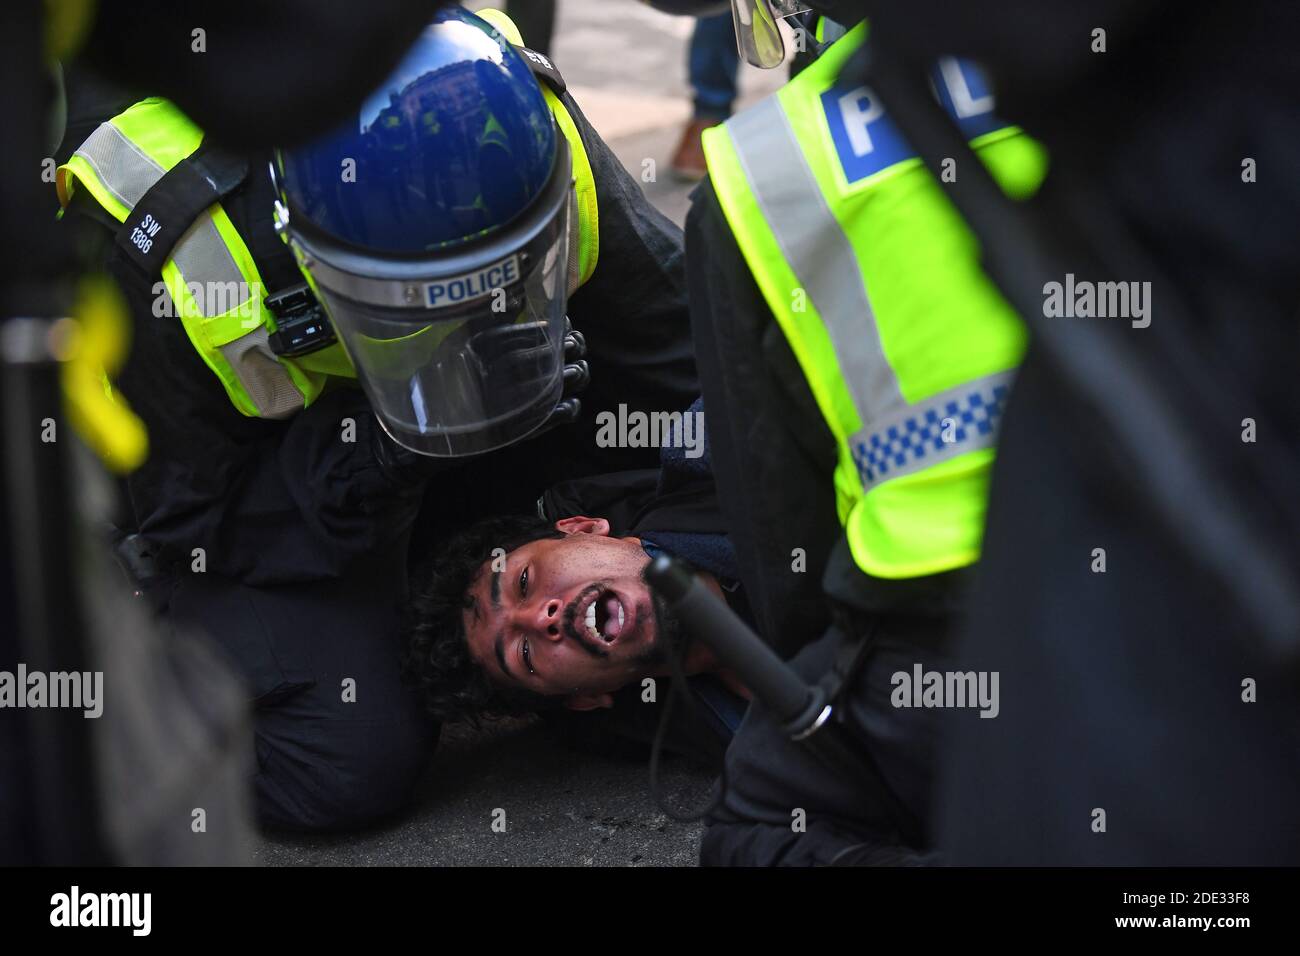 La police a emprisonné un homme lors d'une manifestation anti-verrouillage à Oxford Circus, Londres. Banque D'Images